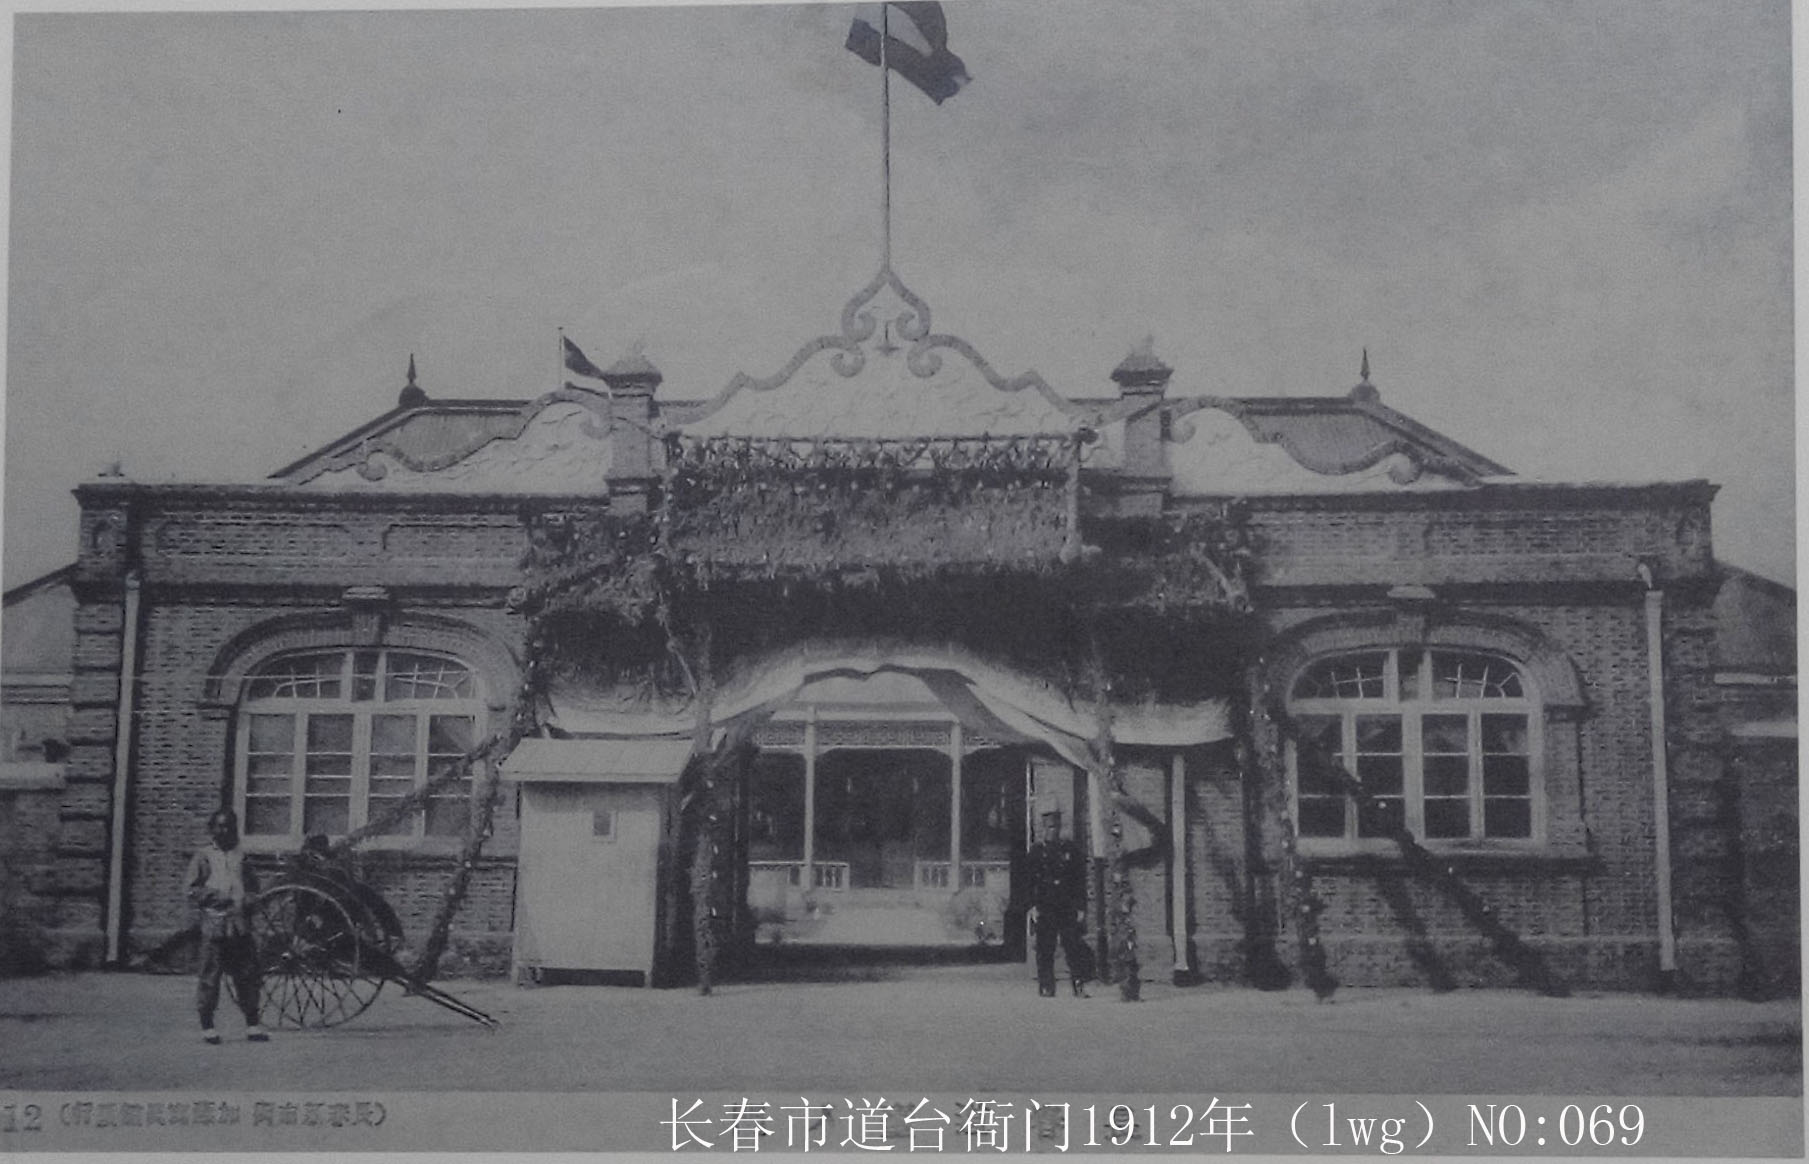 1926年吉长道尹公署(东四道街)   1937年长春文庙明信片(下)